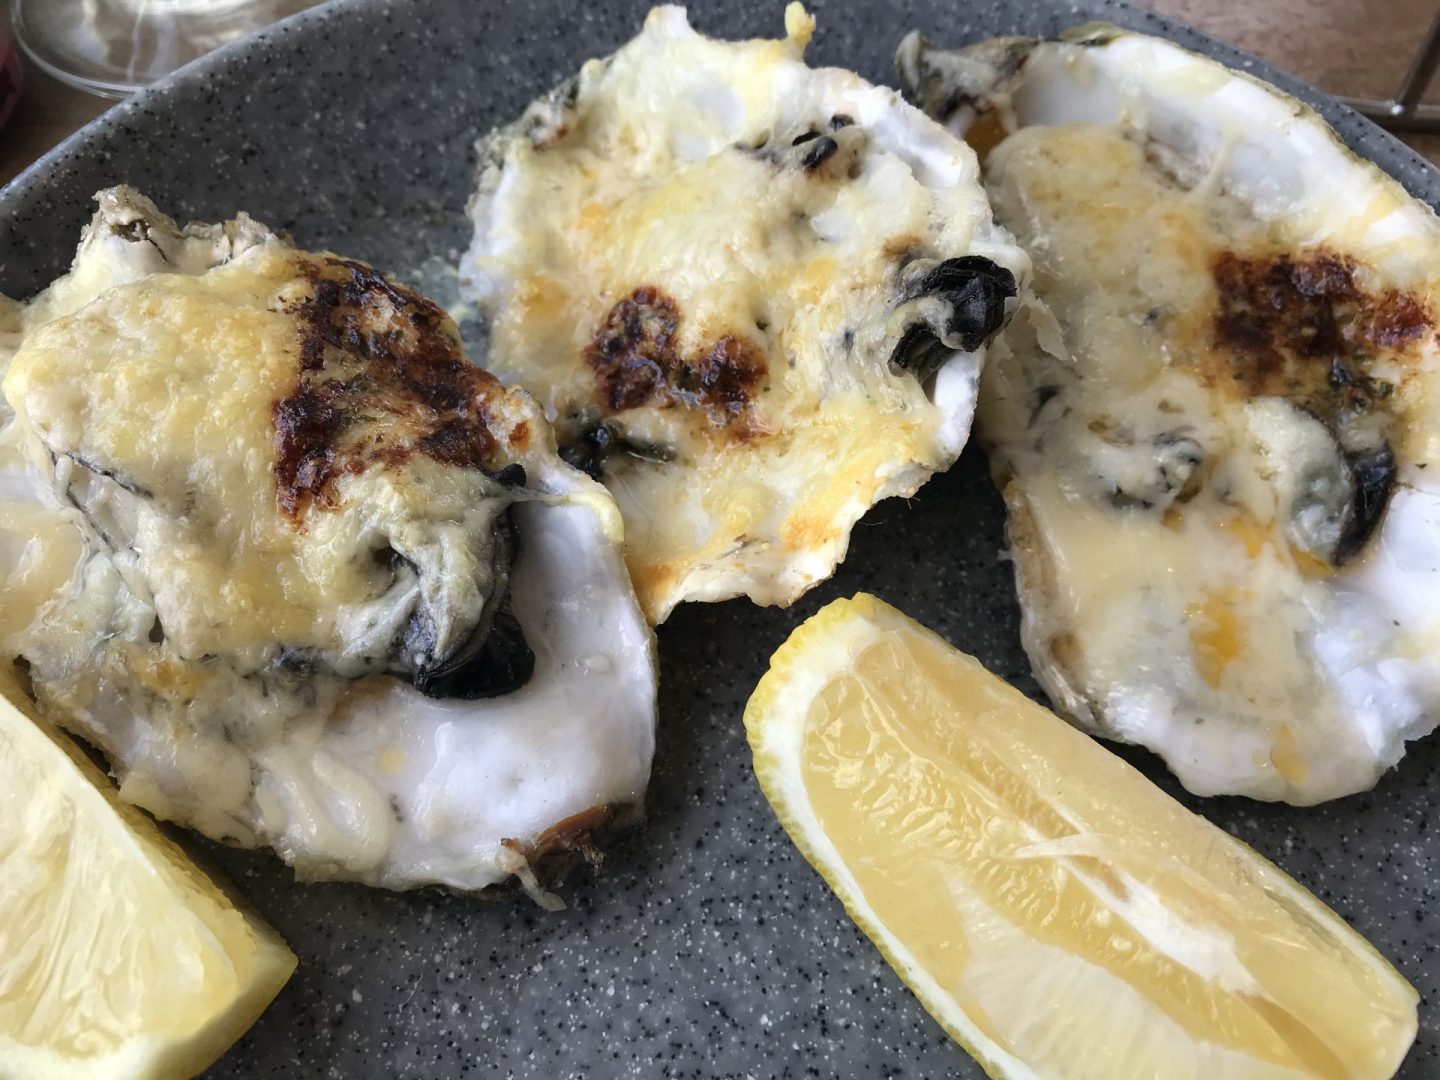 Erfahrung Bewertung Kritik Oase Domburg überbackene Austern Foodblog Sternestulle